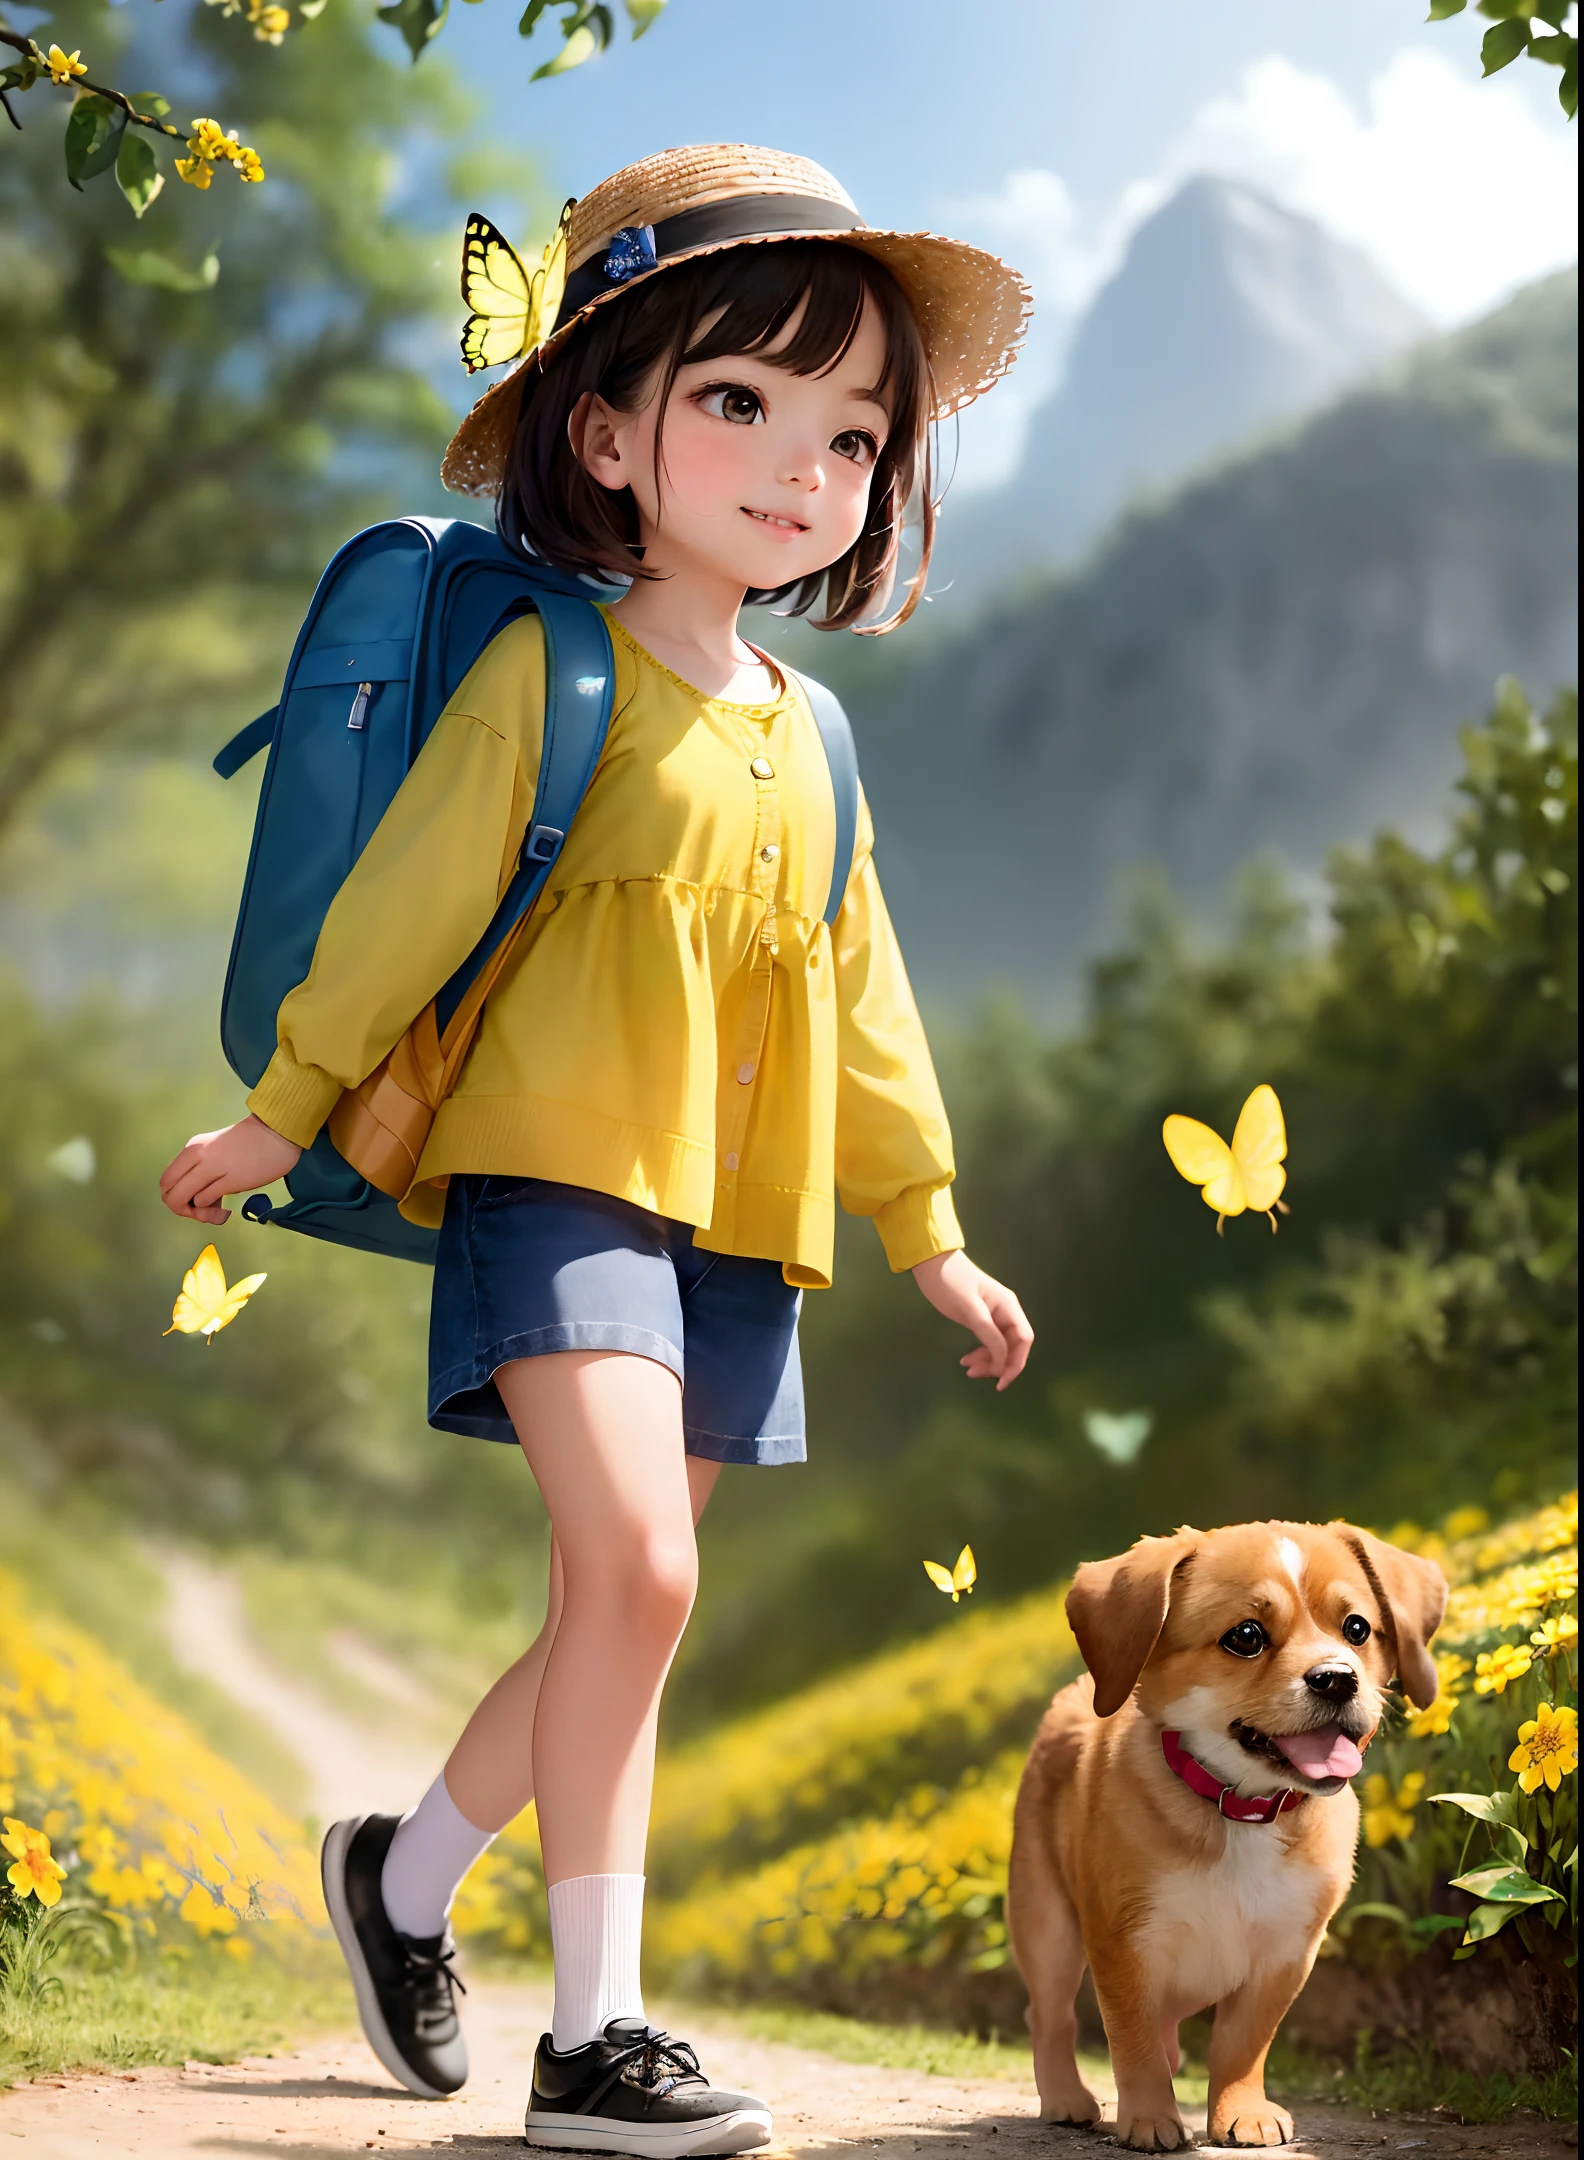 バックパックを背負ったとても魅力的な, 愛らしい子犬を連れて, 美しい黄色い花と自然の景色に囲まれた素敵な春の外出を楽しむ. イラストは4K解像度の高解像度です, 非常に詳細な顔の特徴と漫画風のビジュアル, (バタフライダンス)